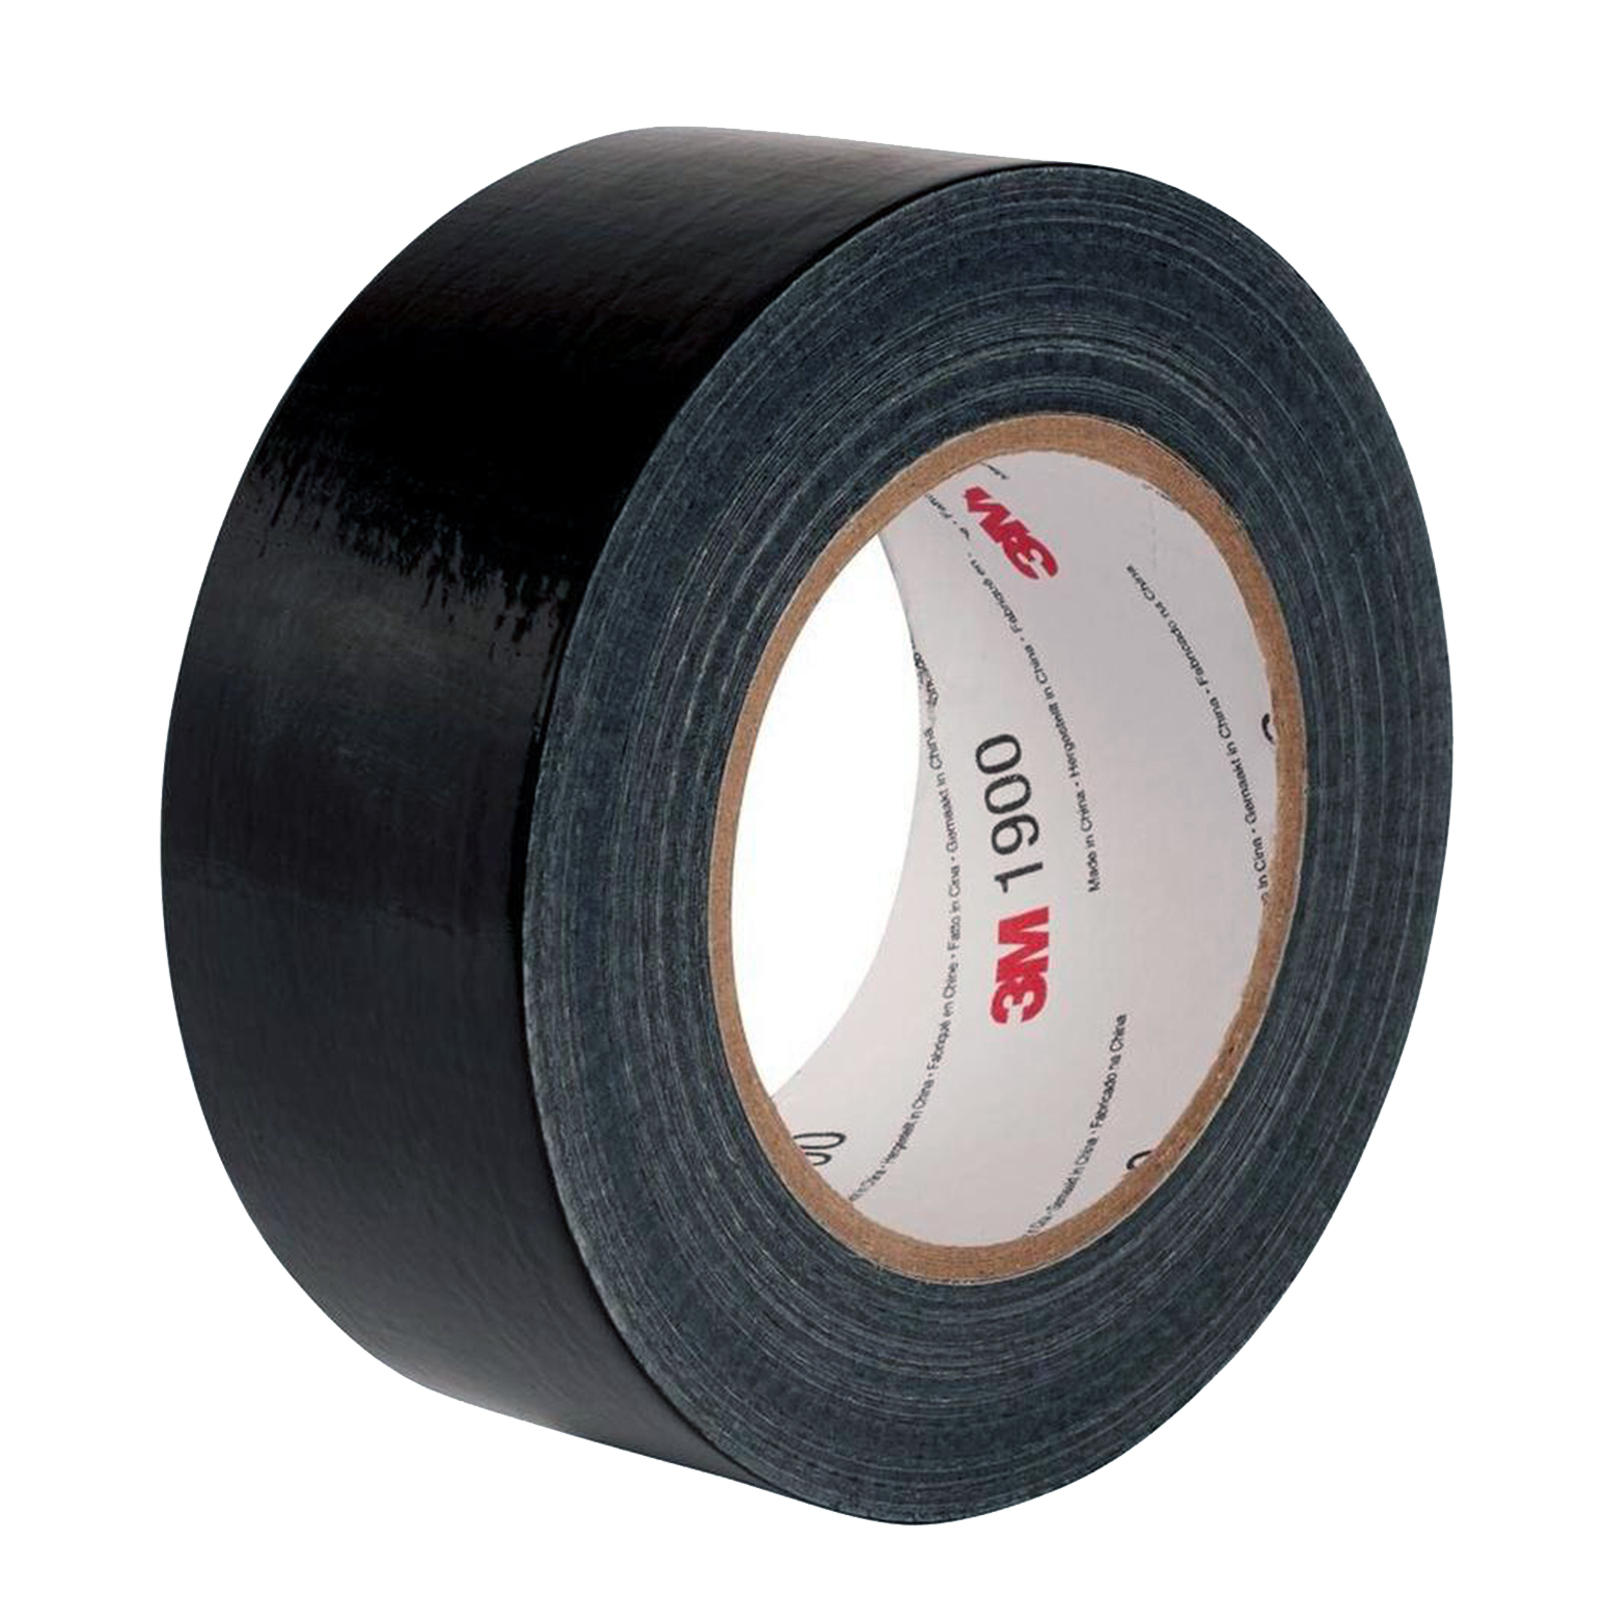 3M Economy duct tape 1900 Black, 50 m x 50 mm armor tape repair tape